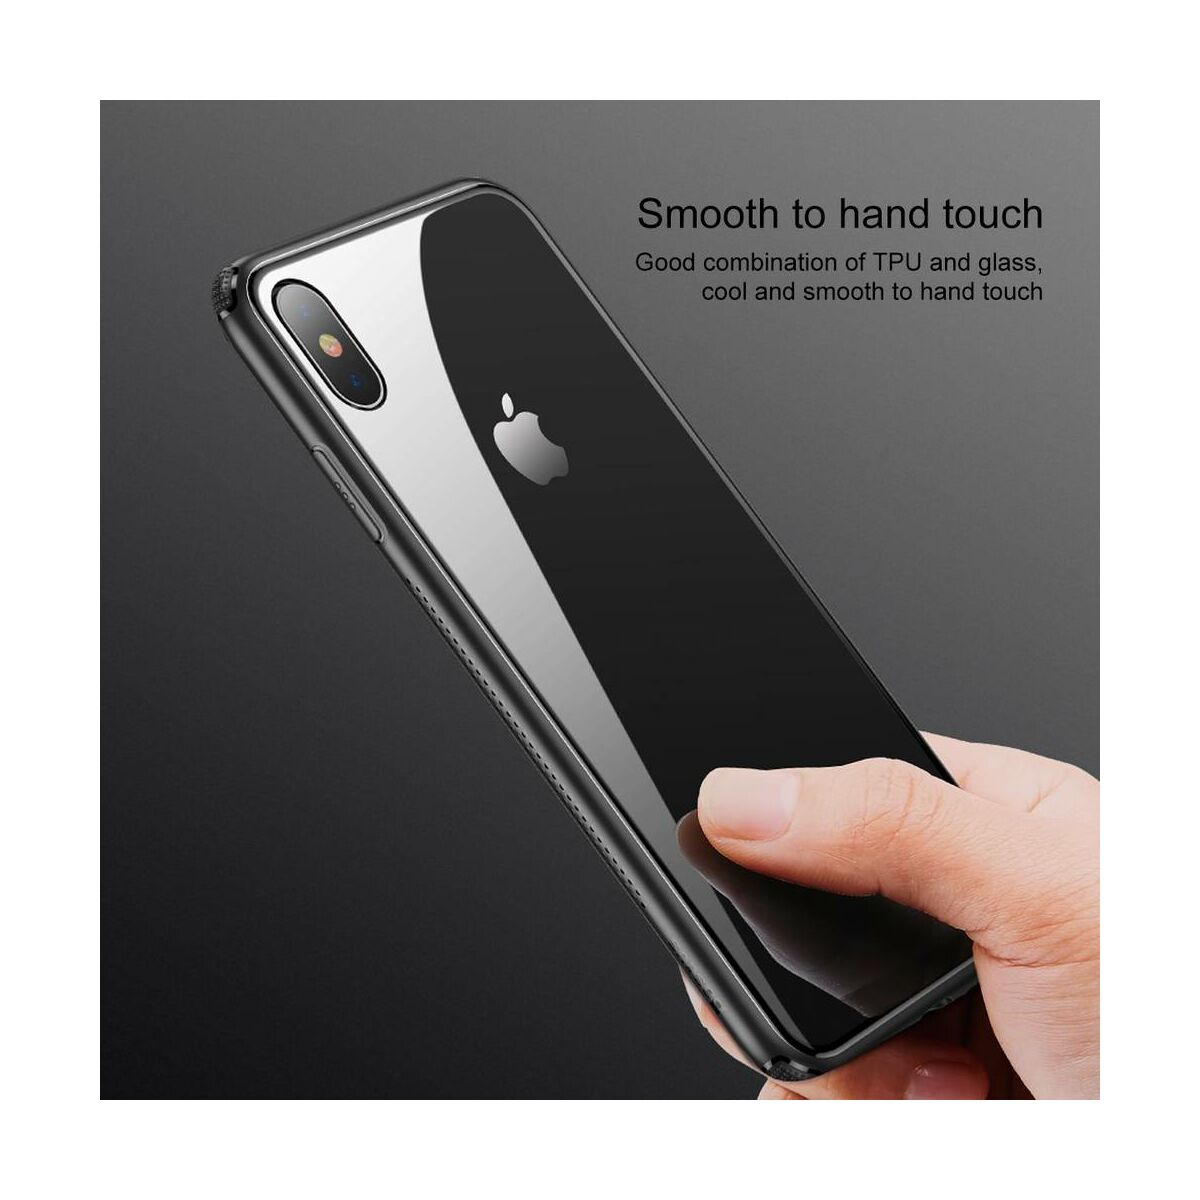 Baseus iPhone XS Max tok, átlátszó, oldalkerettel, fekete (WIAPIPH65-YS01)